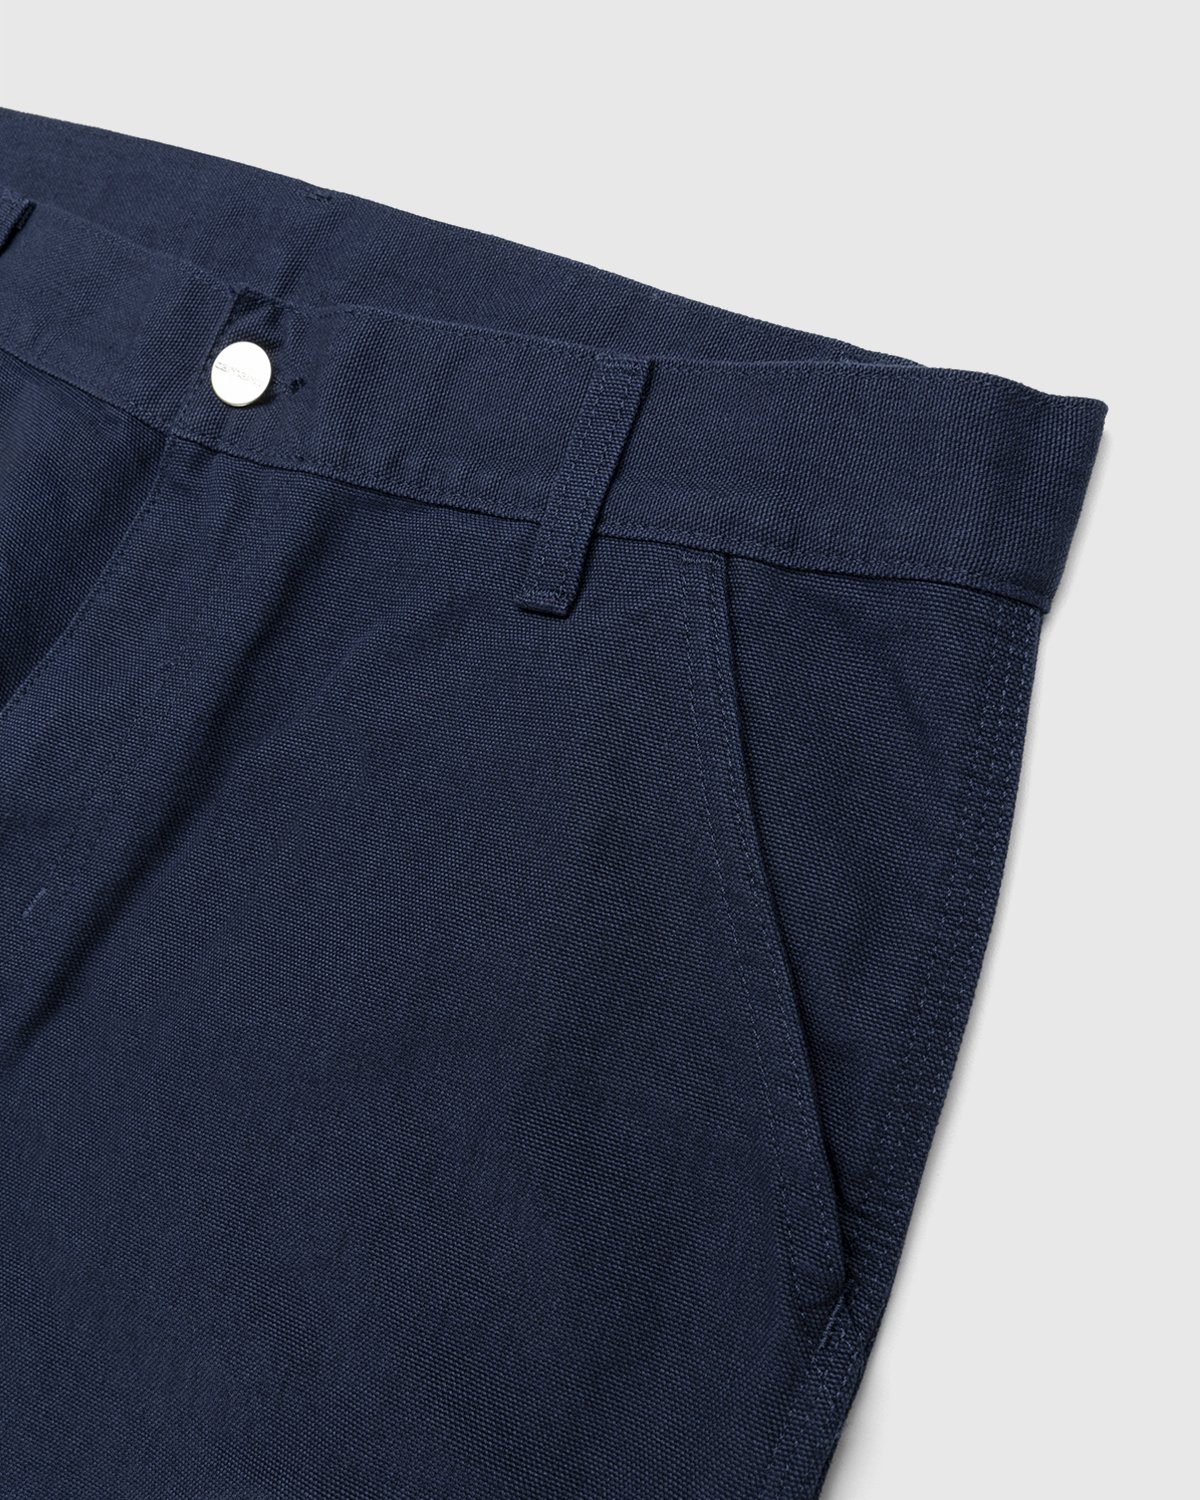 Carhartt WIP - Ruck Single Knee Pant Dark Navy - Clothing - Blue - Image 4